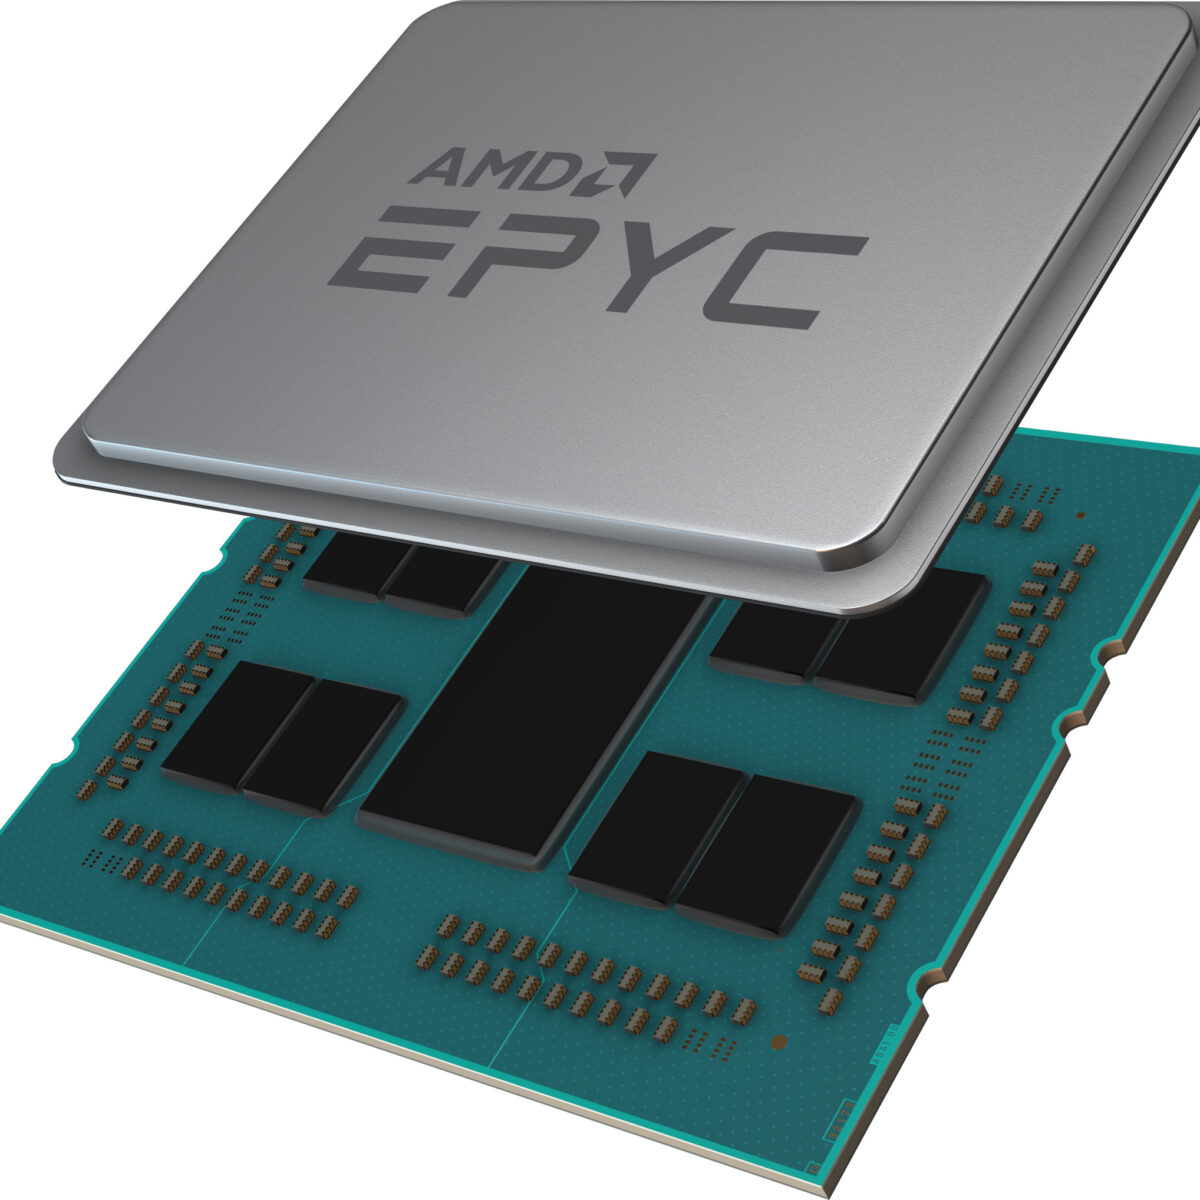 AMD 2nd Gen Epyc Rome Half Delidded